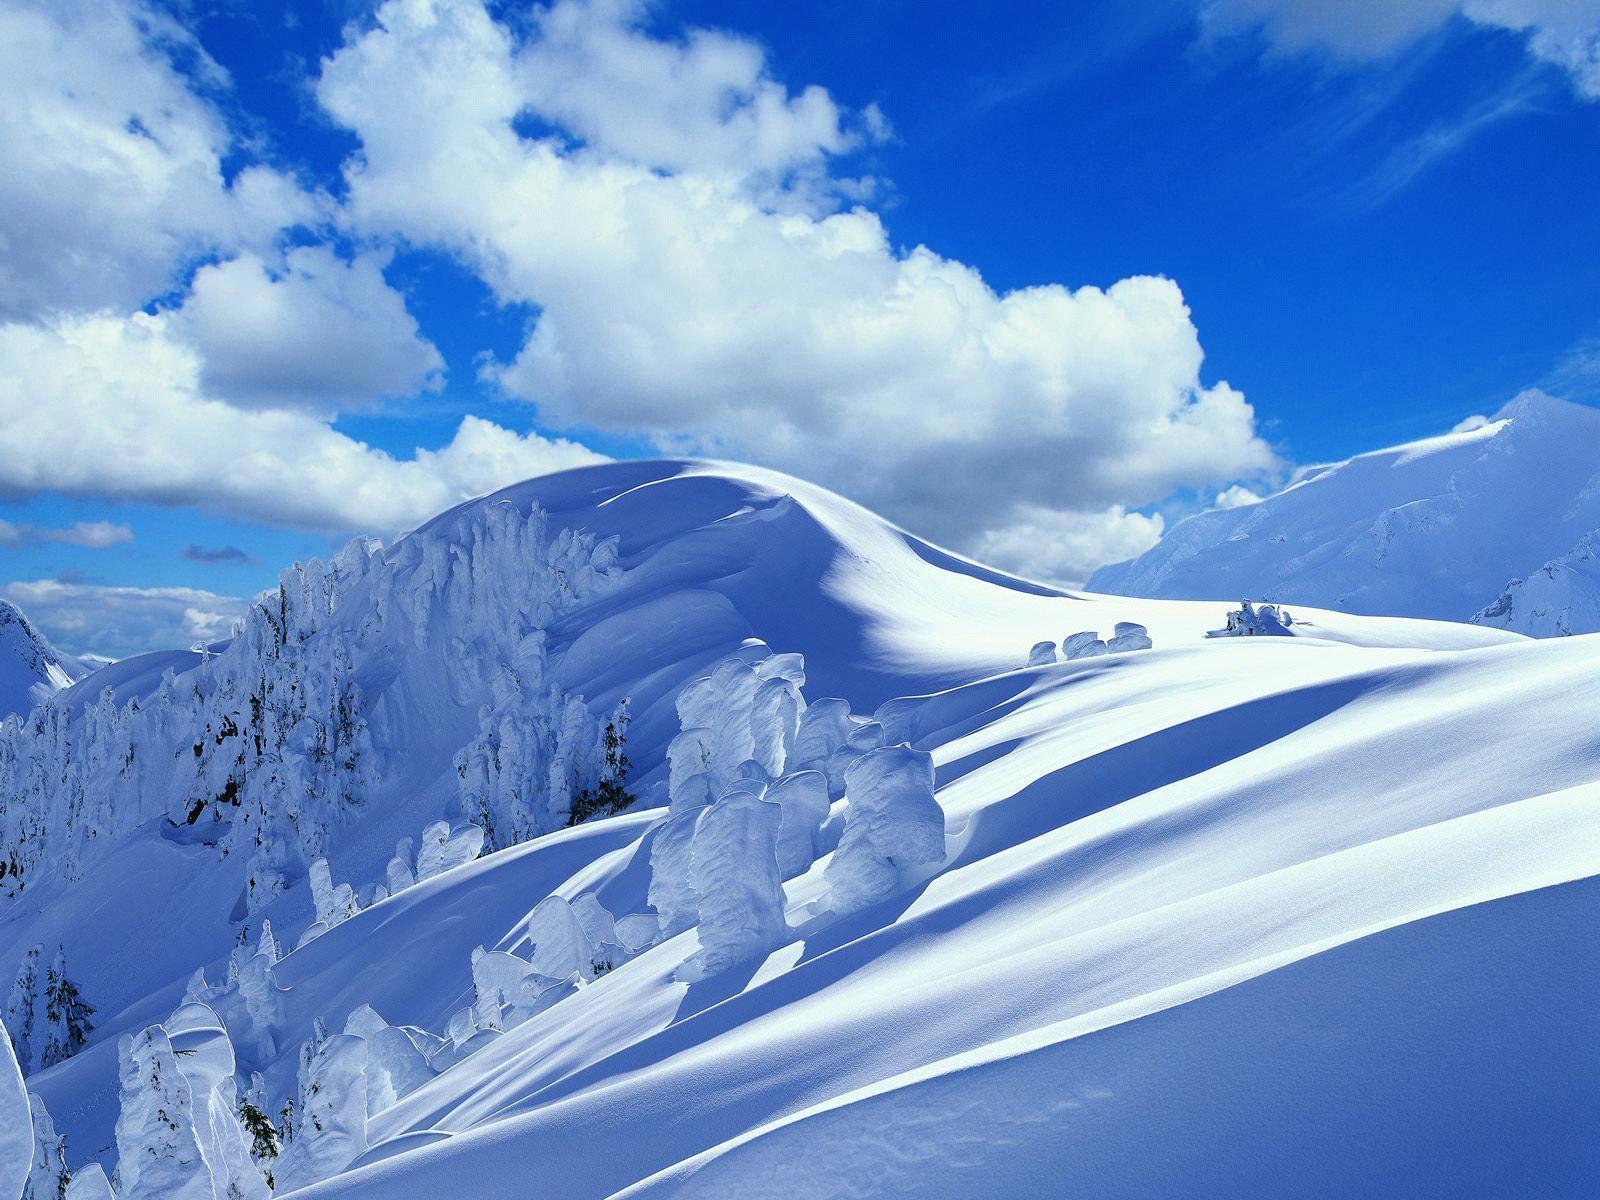 Azure Winter Bliss Xp Theme Wallpaper 1600x1200 px Free Download